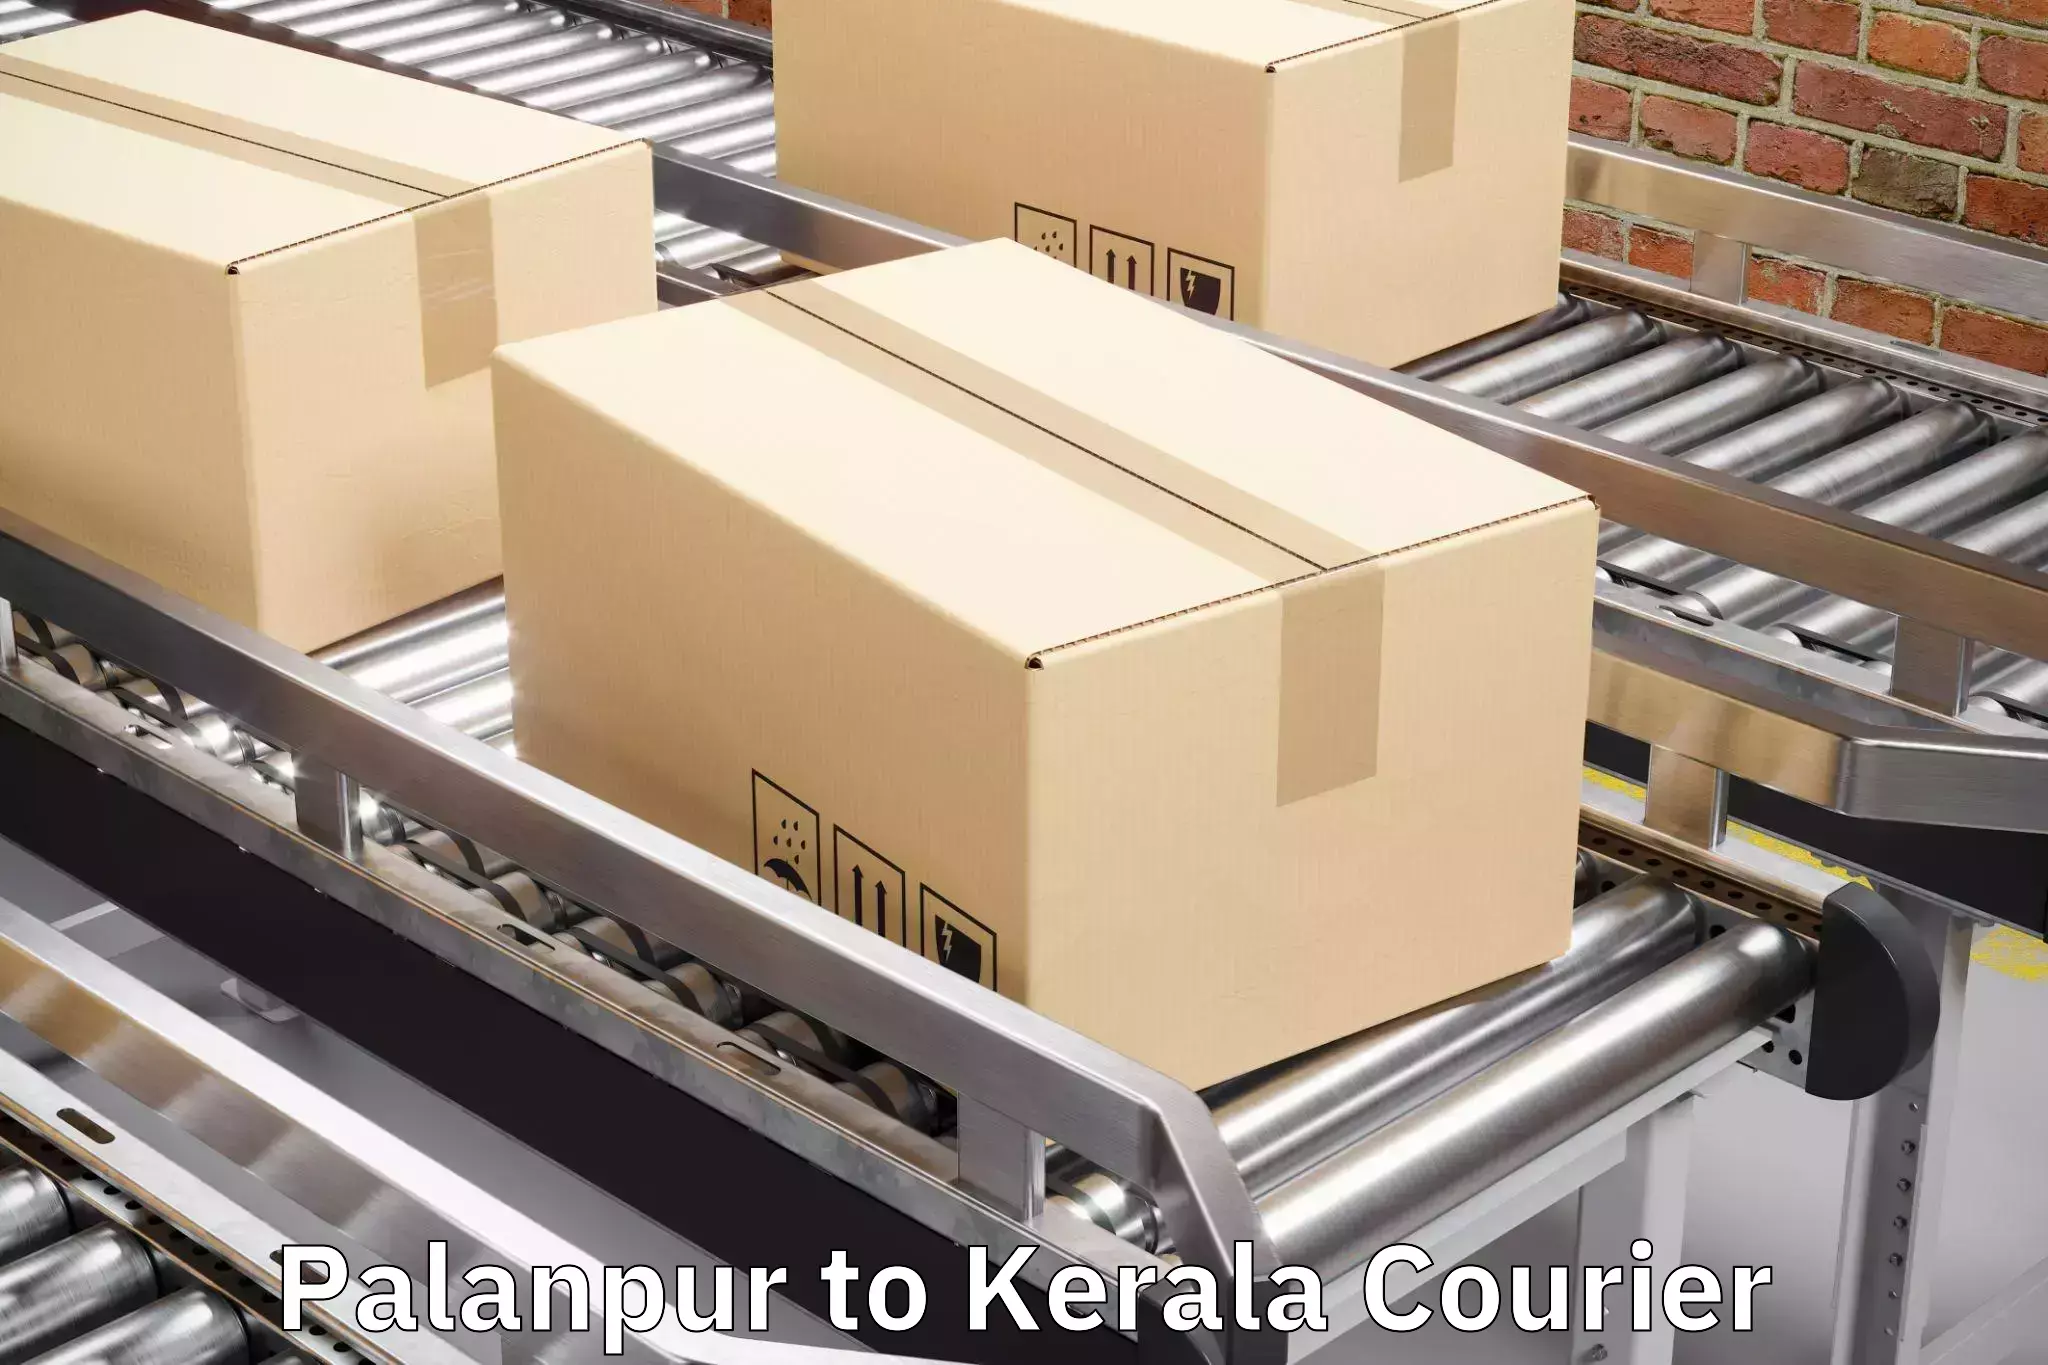 Baggage transport scheduler Palanpur to Irinjalakuda